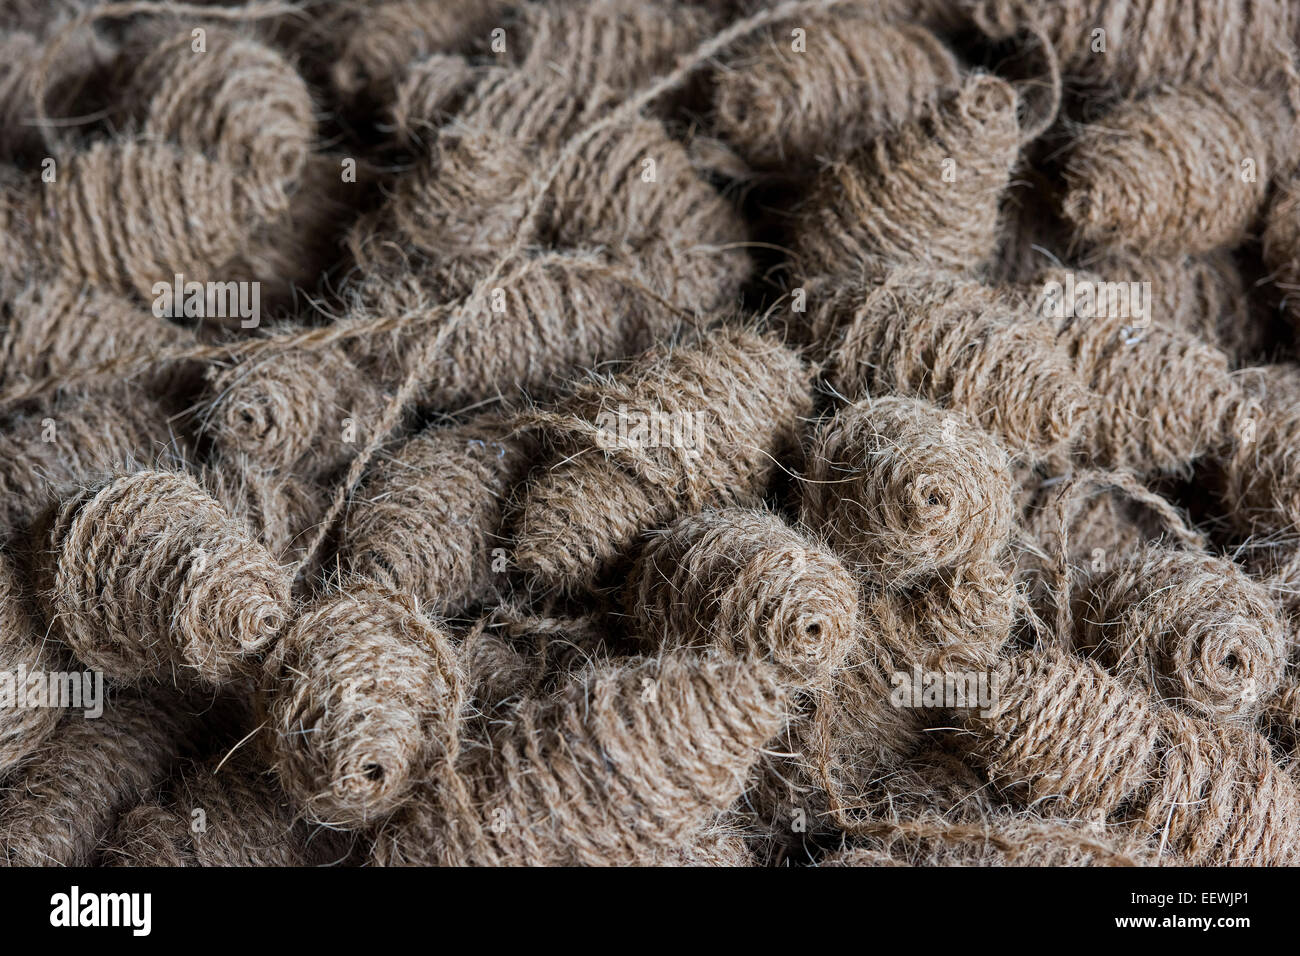 Cordes faites de fibres de noix de coco ou coco, fibre de coco, de l'industrie usine, Alappuzha, Kerala, Inde Banque D'Images